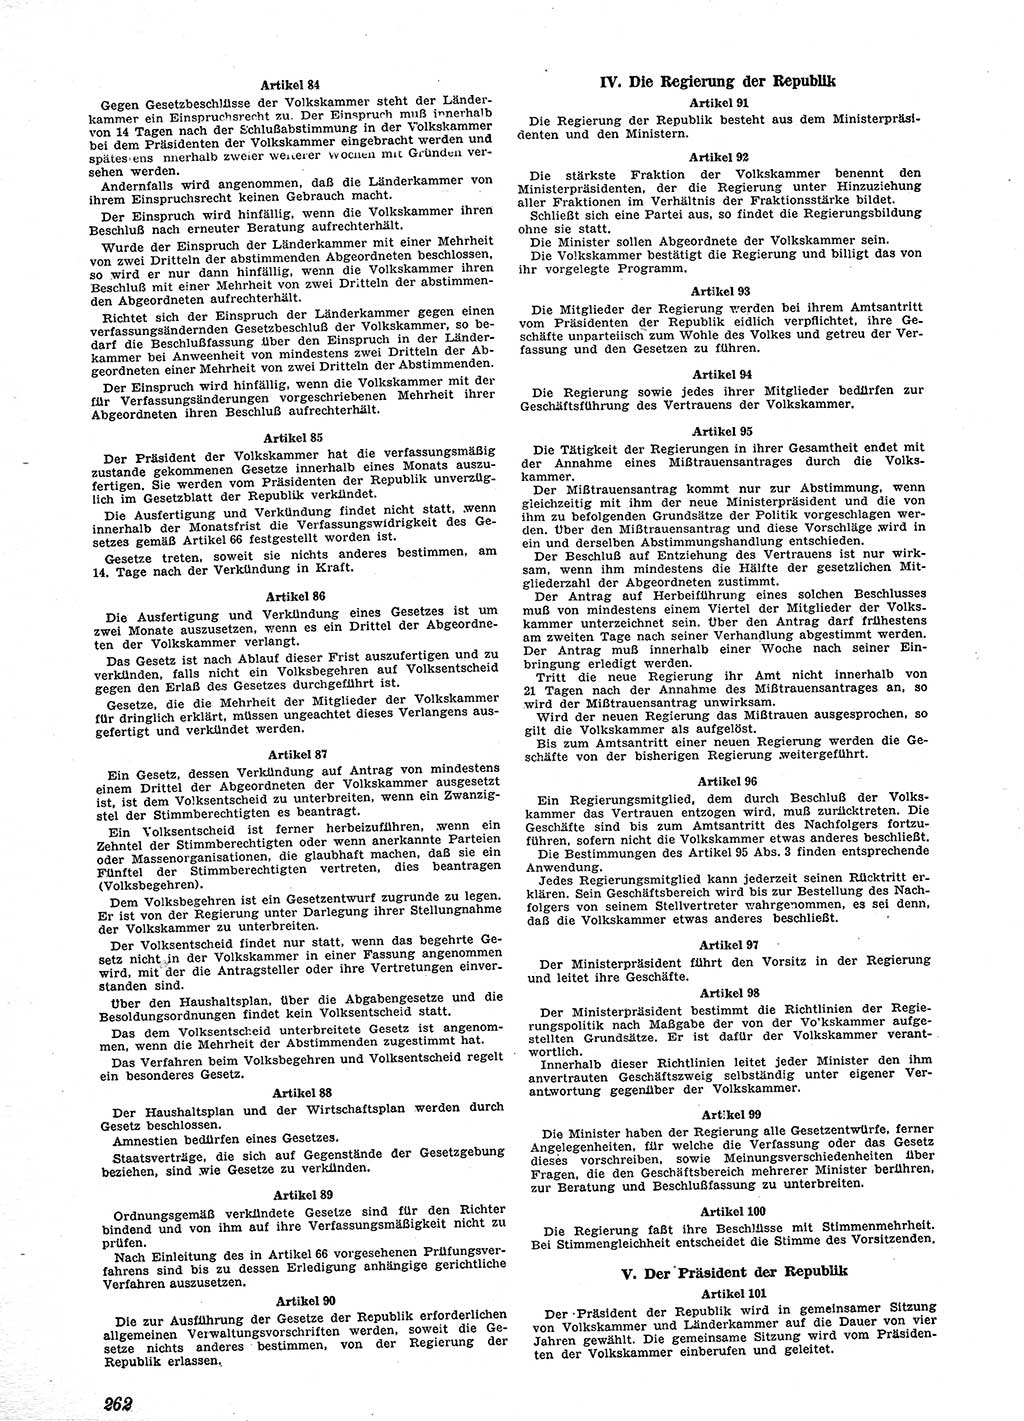 Neue Justiz (NJ), Zeitschrift für Recht und Rechtswissenschaft [Sowjetische Besatzungszone (SBZ) Deutschland], 2. Jahrgang 1948, Seite 262 (NJ SBZ Dtl. 1948, S. 262)